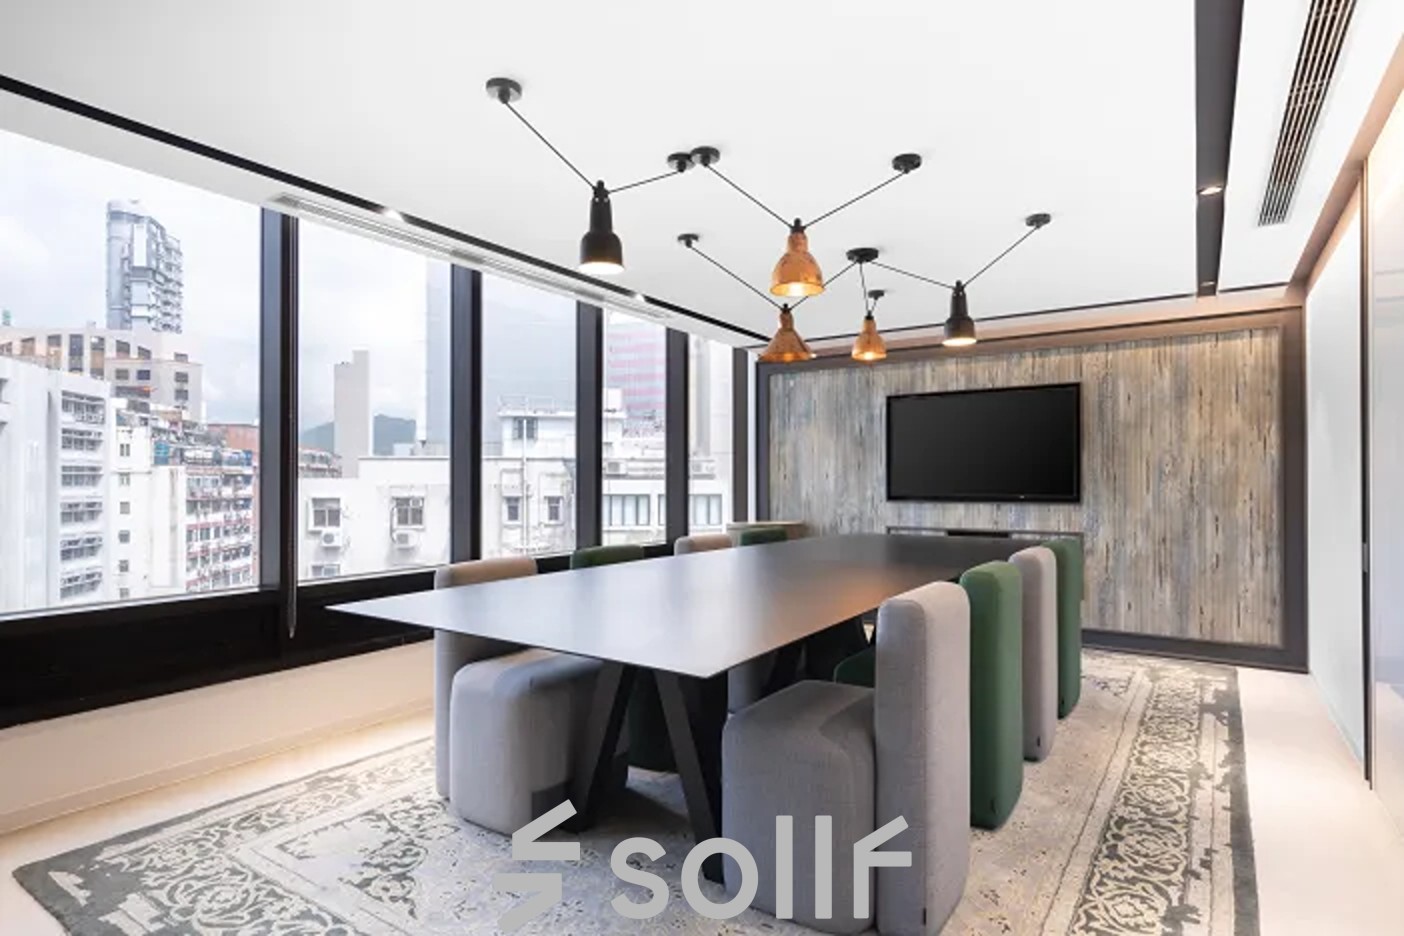 Modernes, helles Konferenzraum-Design in Genf Les Genets, Rue du Pré-de-la-Bichette 1 mit eleganter Büroausstattung ideal für geschäftliche Besprechungen.